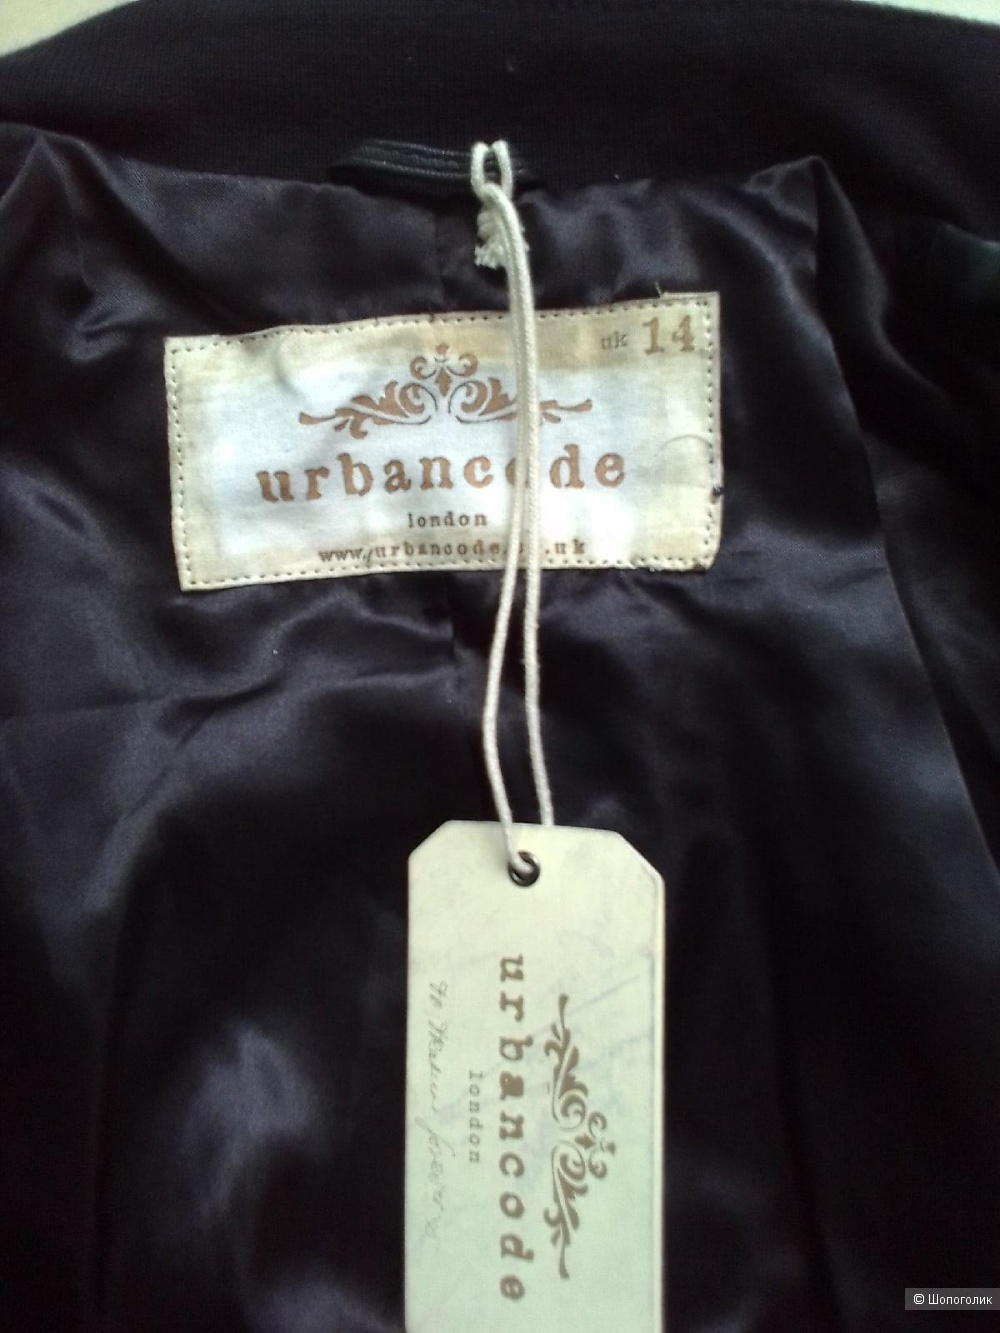 Кожаная куртка Urbancode London UK 14 рос 48-50